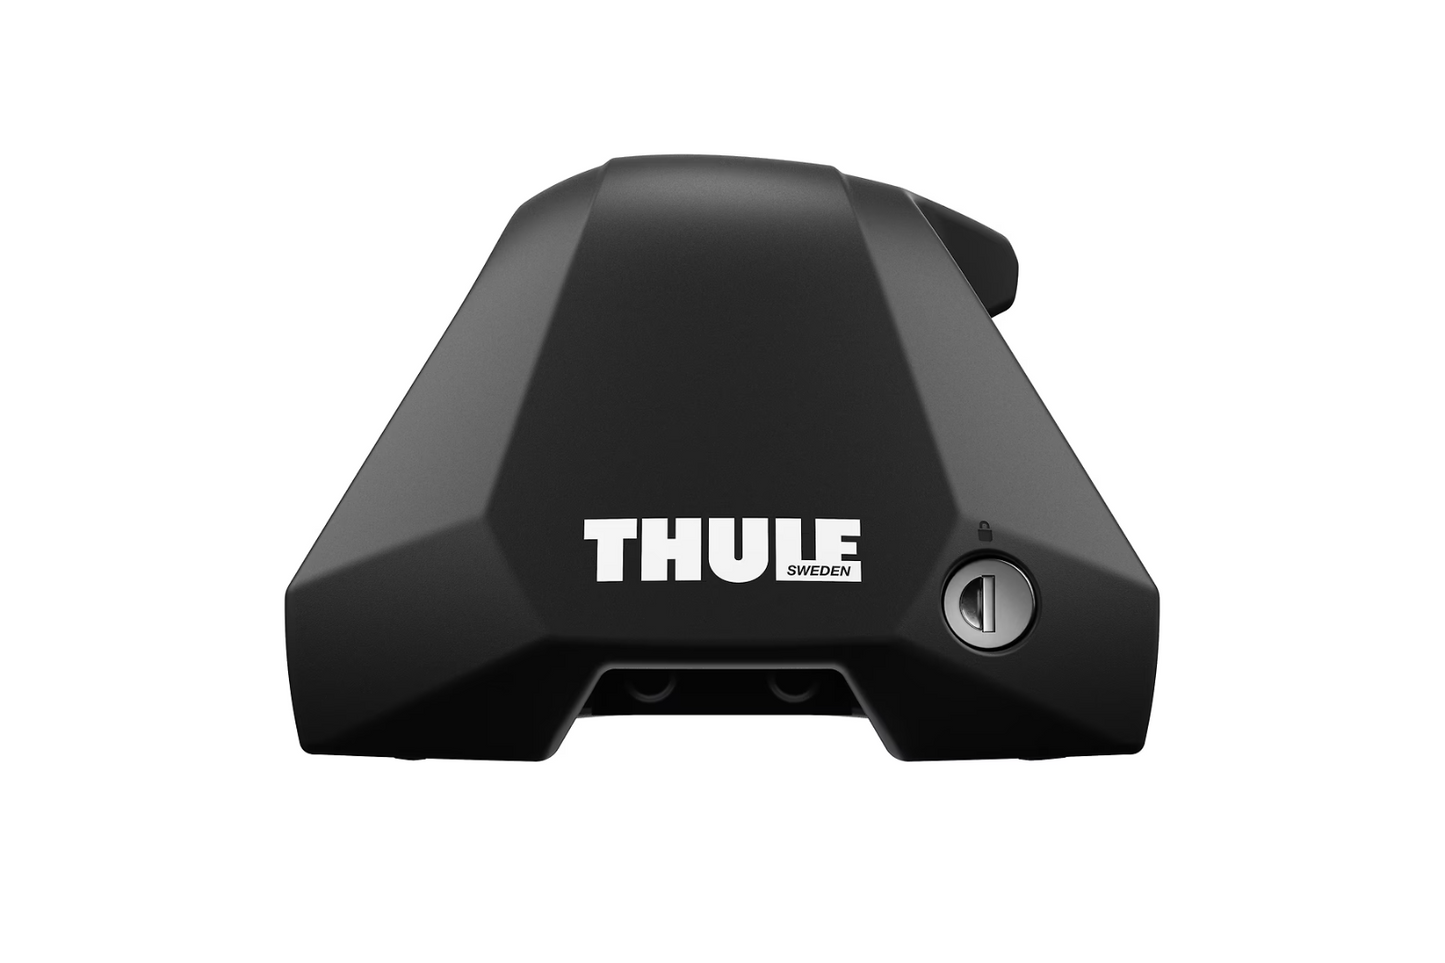 Thule 7205 Edge Clamp Foot Pack / Footpack Set of 4 720500